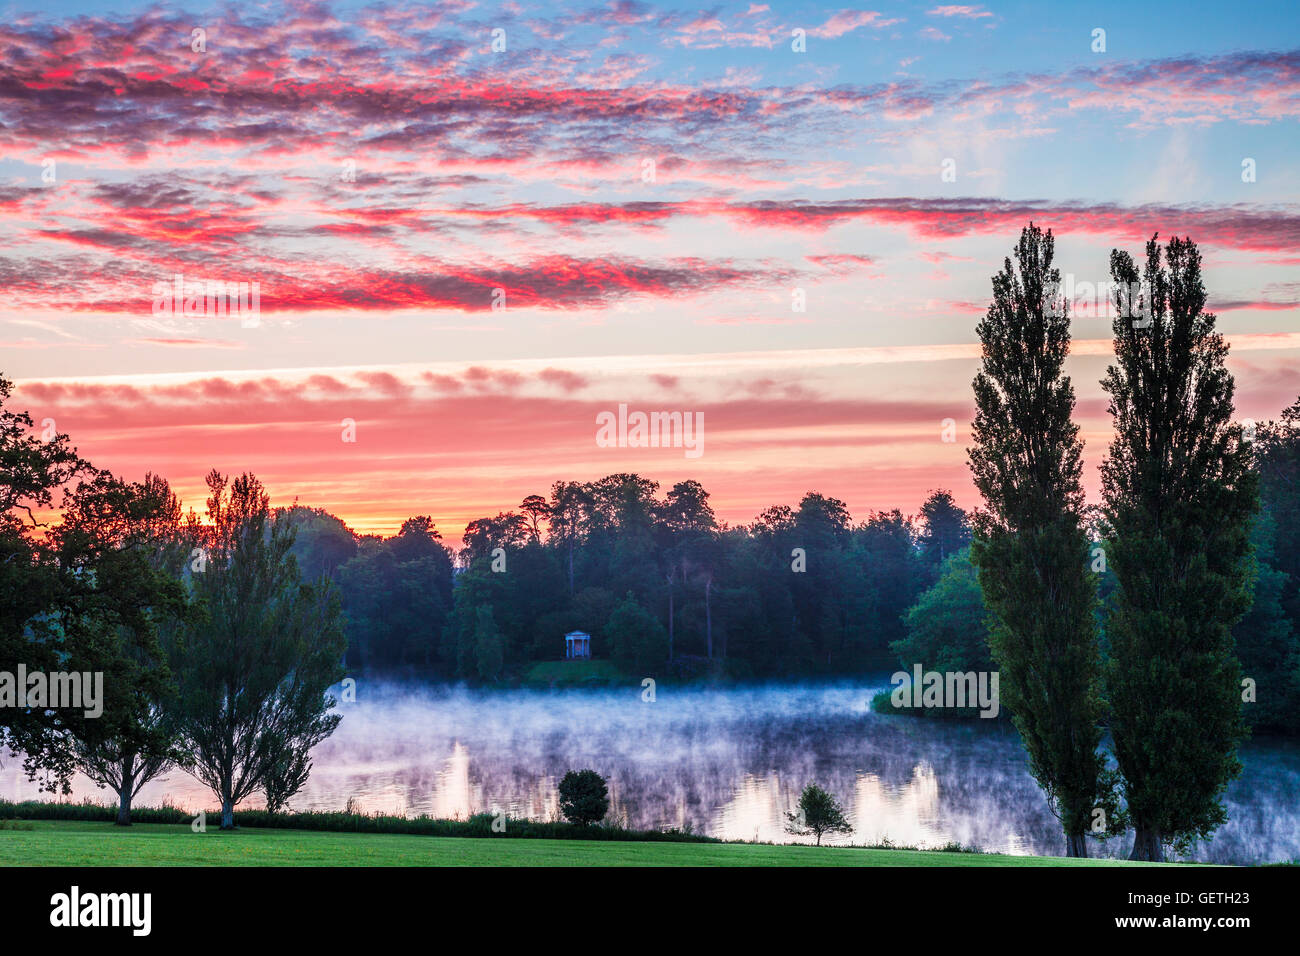 Le lever du soleil sur le temple dorique et le lac dans le parc de l'Bowood Estate dans le Wiltshire. Banque D'Images